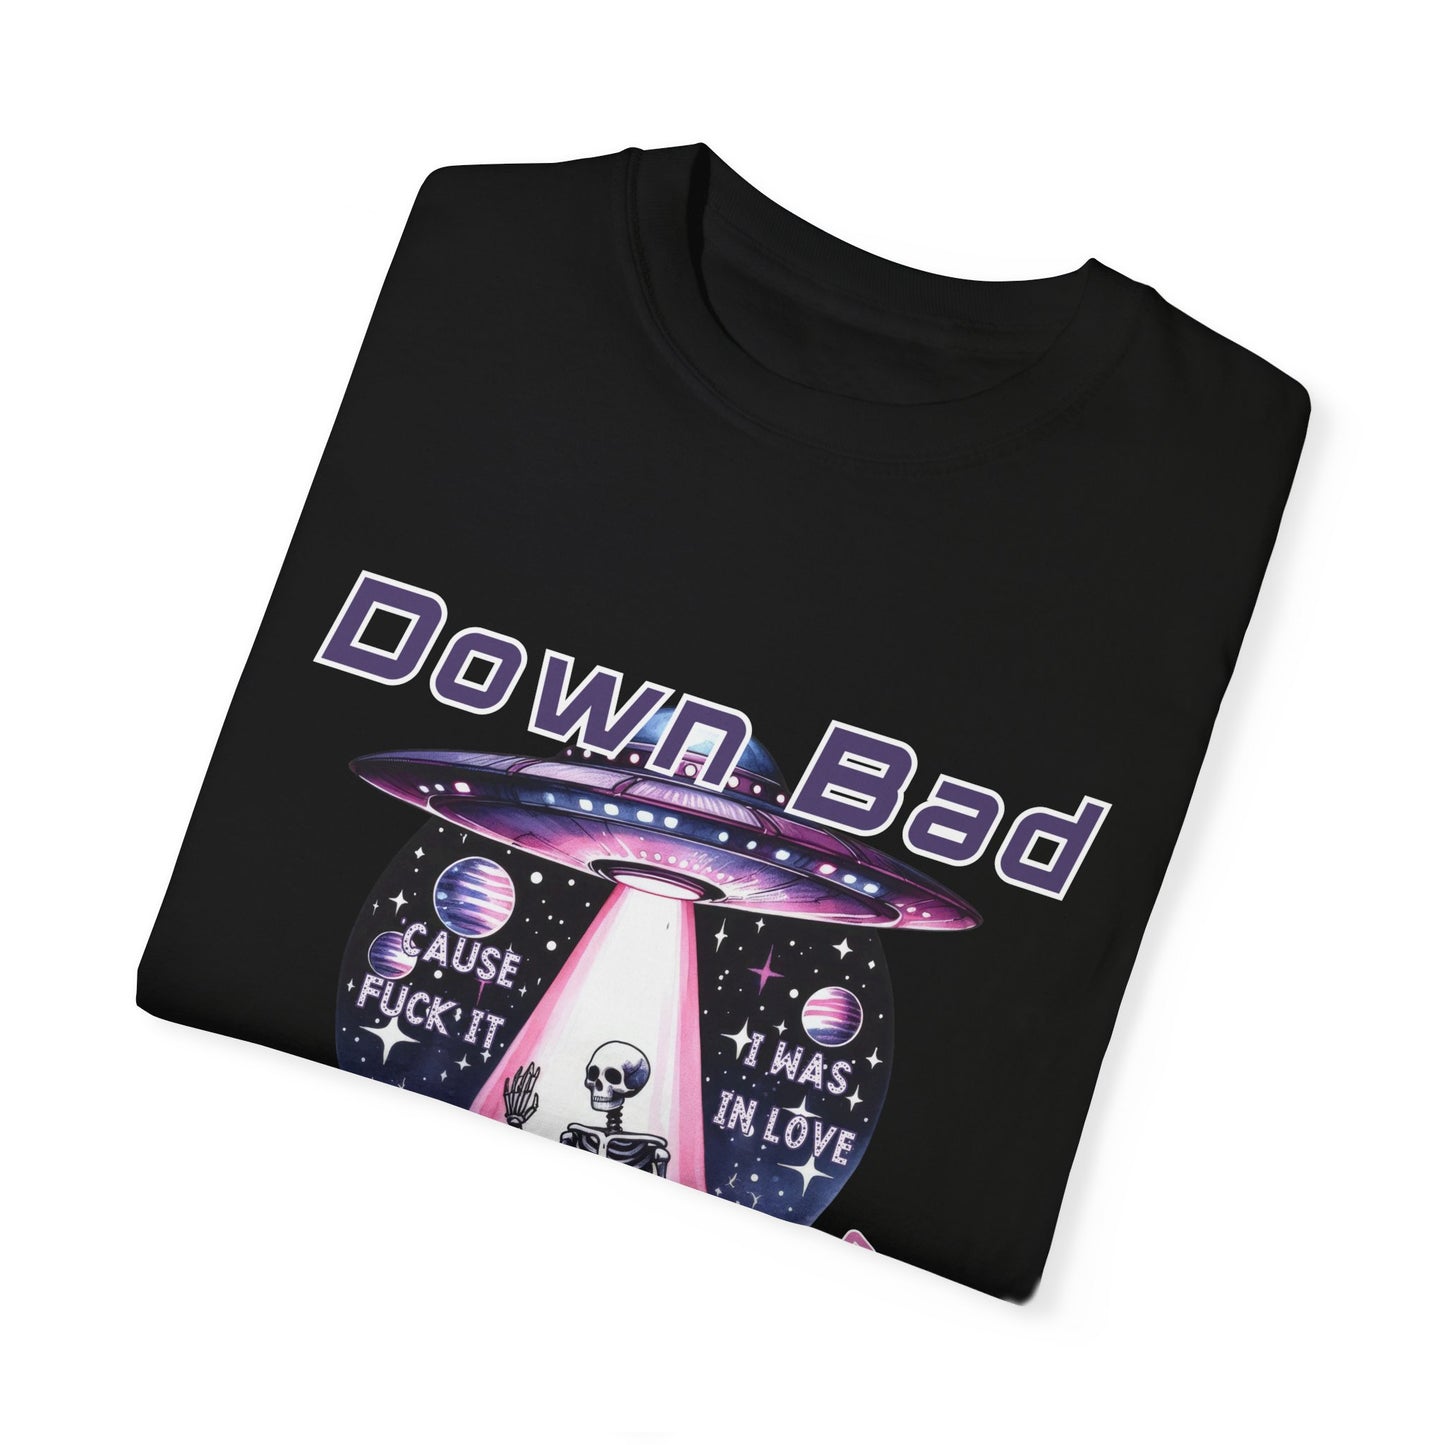 Down Bad Waving at the Ship Garment-Dyed T-shirt